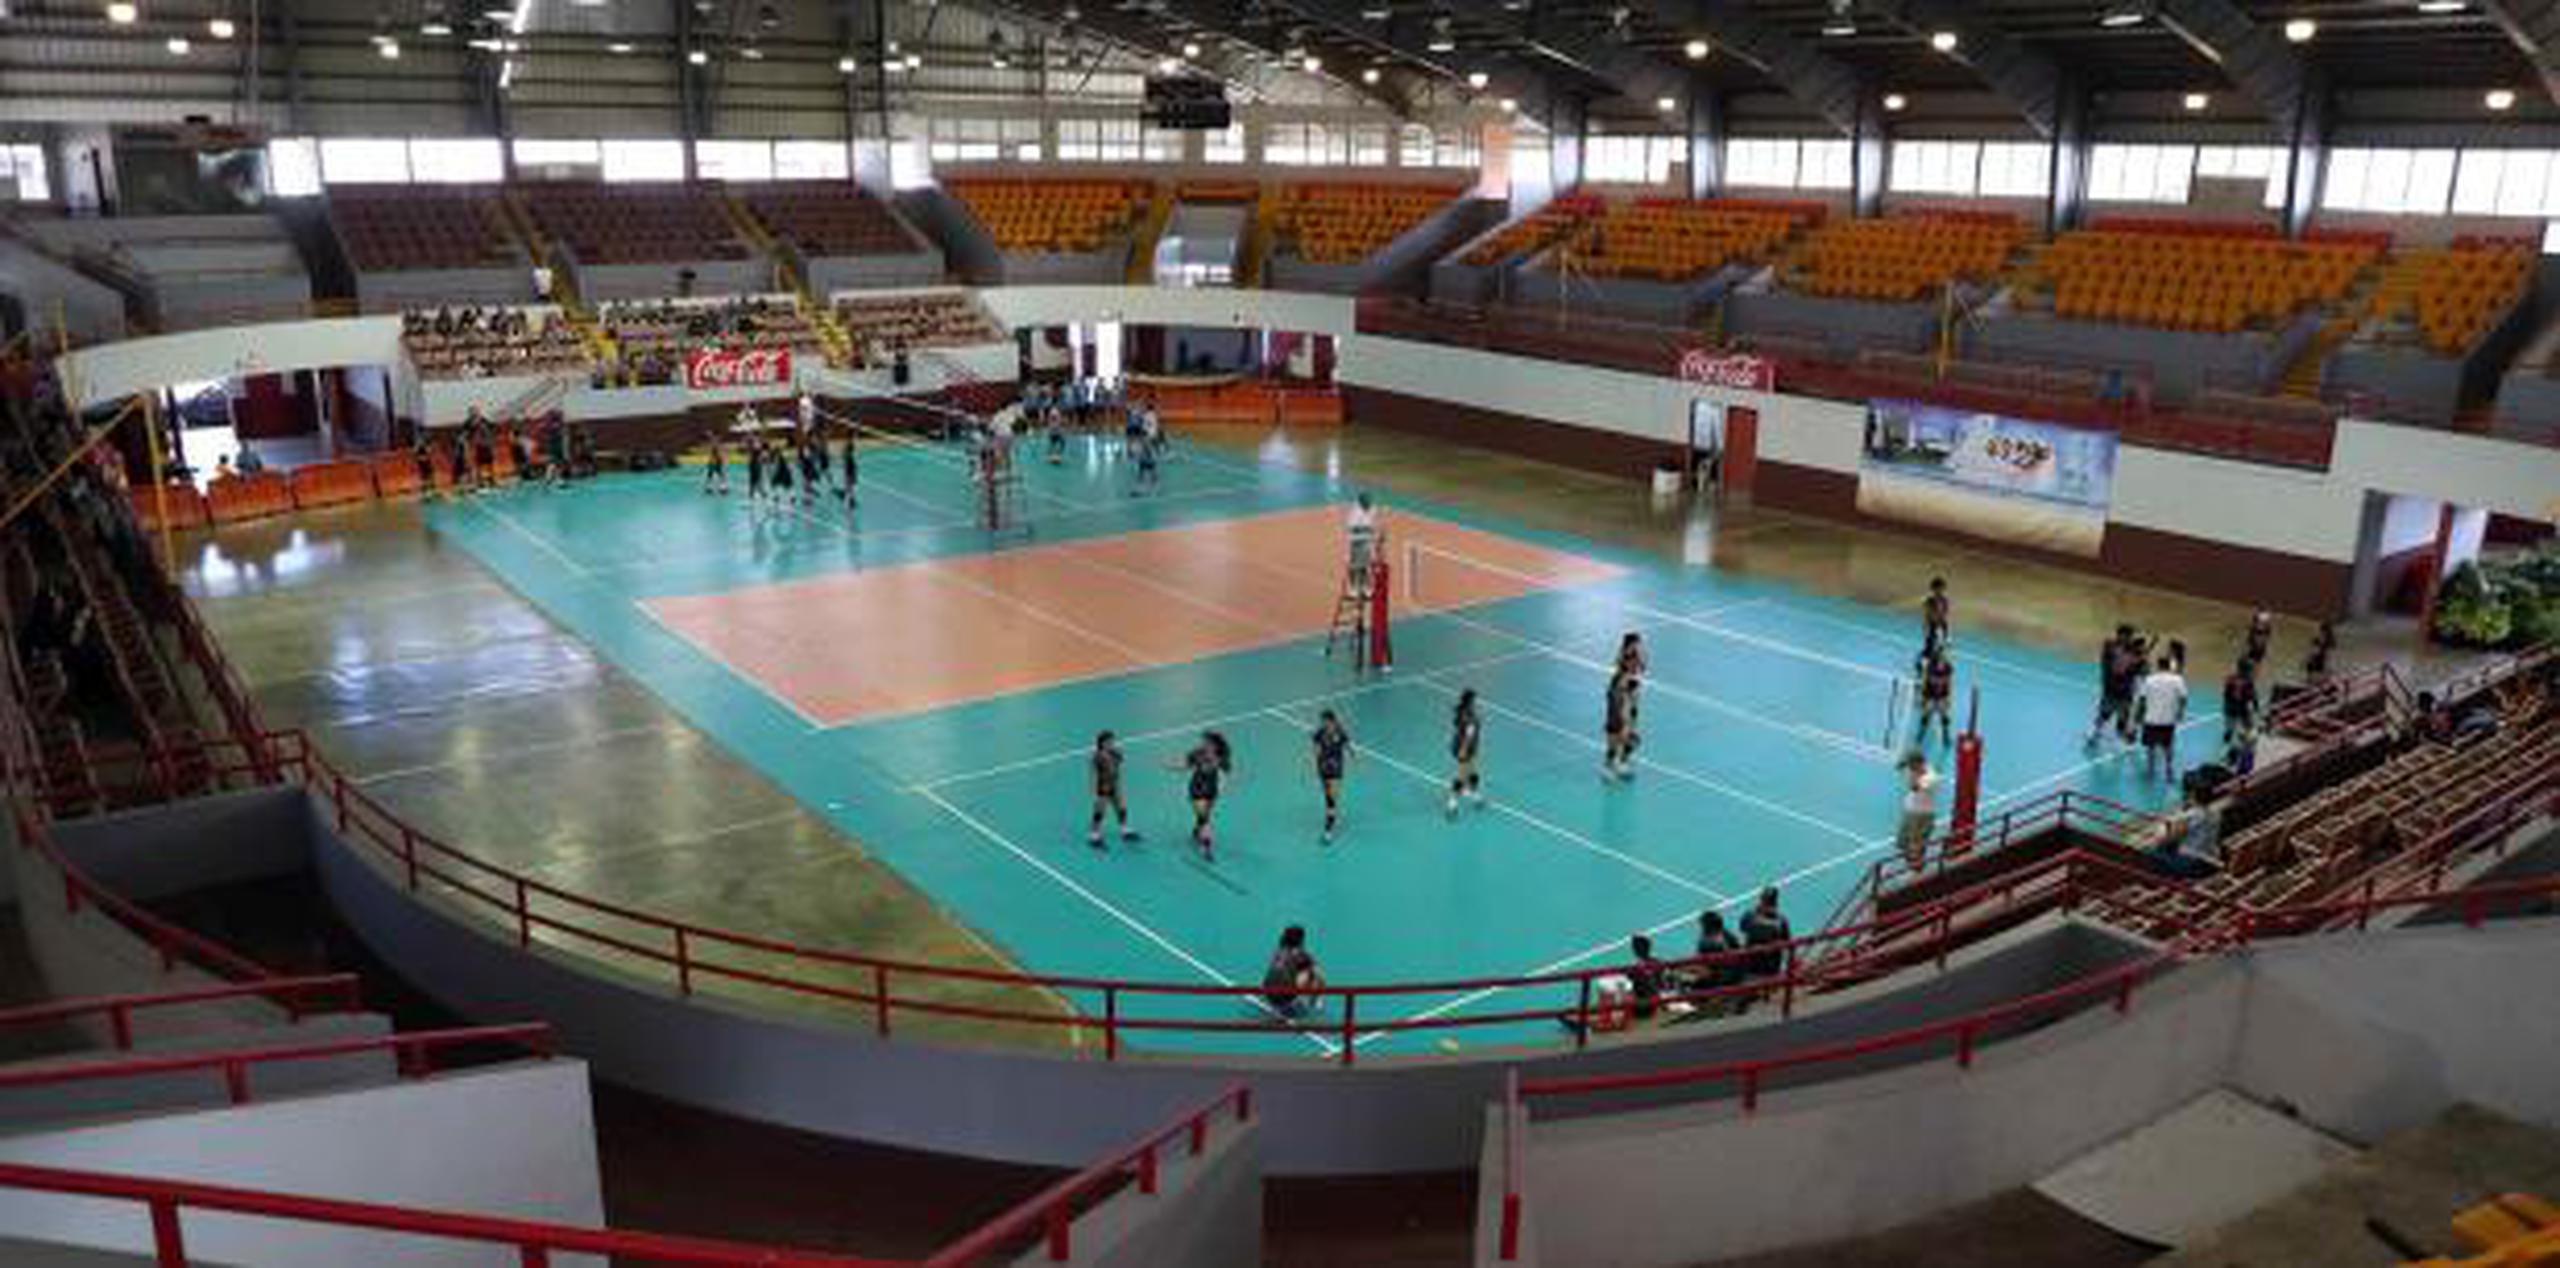 La cancha Roger Mendoza fue construida exclusivamente para albergar juegos de voleibol. Ahora será más ambientada para este deporte. (juan.martinez@gfrmedia.com)